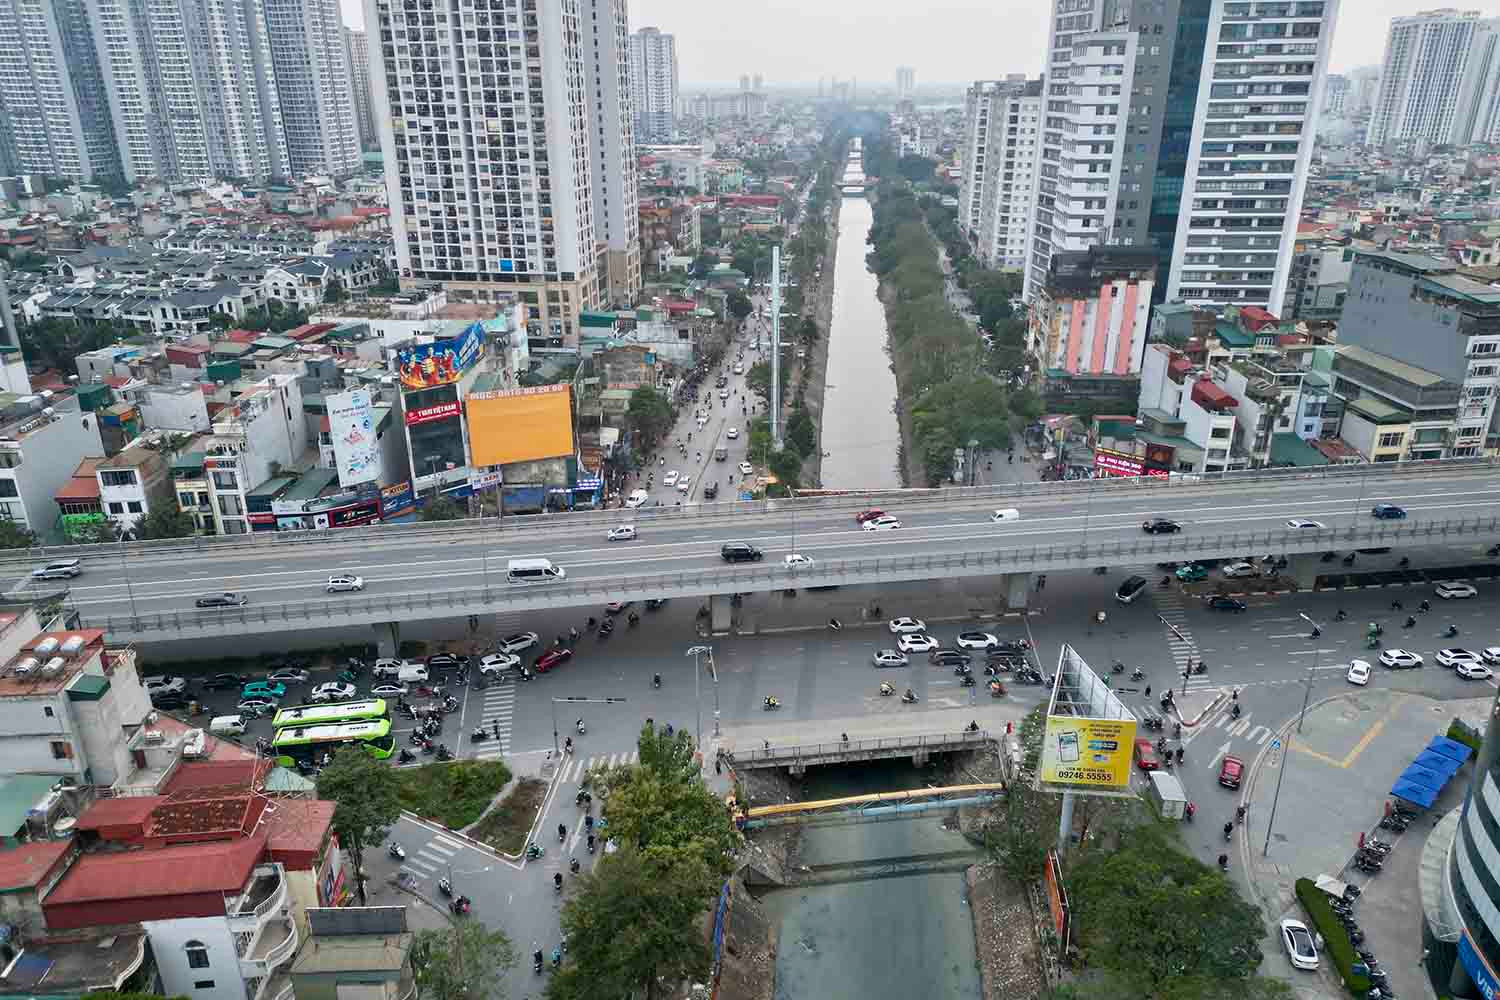 Dự án xây dựng đường Tam Trinh được UBND TP Hà Nội giao cho UBND quận Hoàng Mai làm chủ đầu tư từ năm 2012. Đây là tuyến đường chính trong một phần của quy hoạch tổng thể giao thông trên địa bàn quận Hoàng Mai, có nhiệm vụ kết nối đường Vành đai 2 với đường Vành đai 3, thời gian thực hiện dự án từ năm 2016 - 2019. 